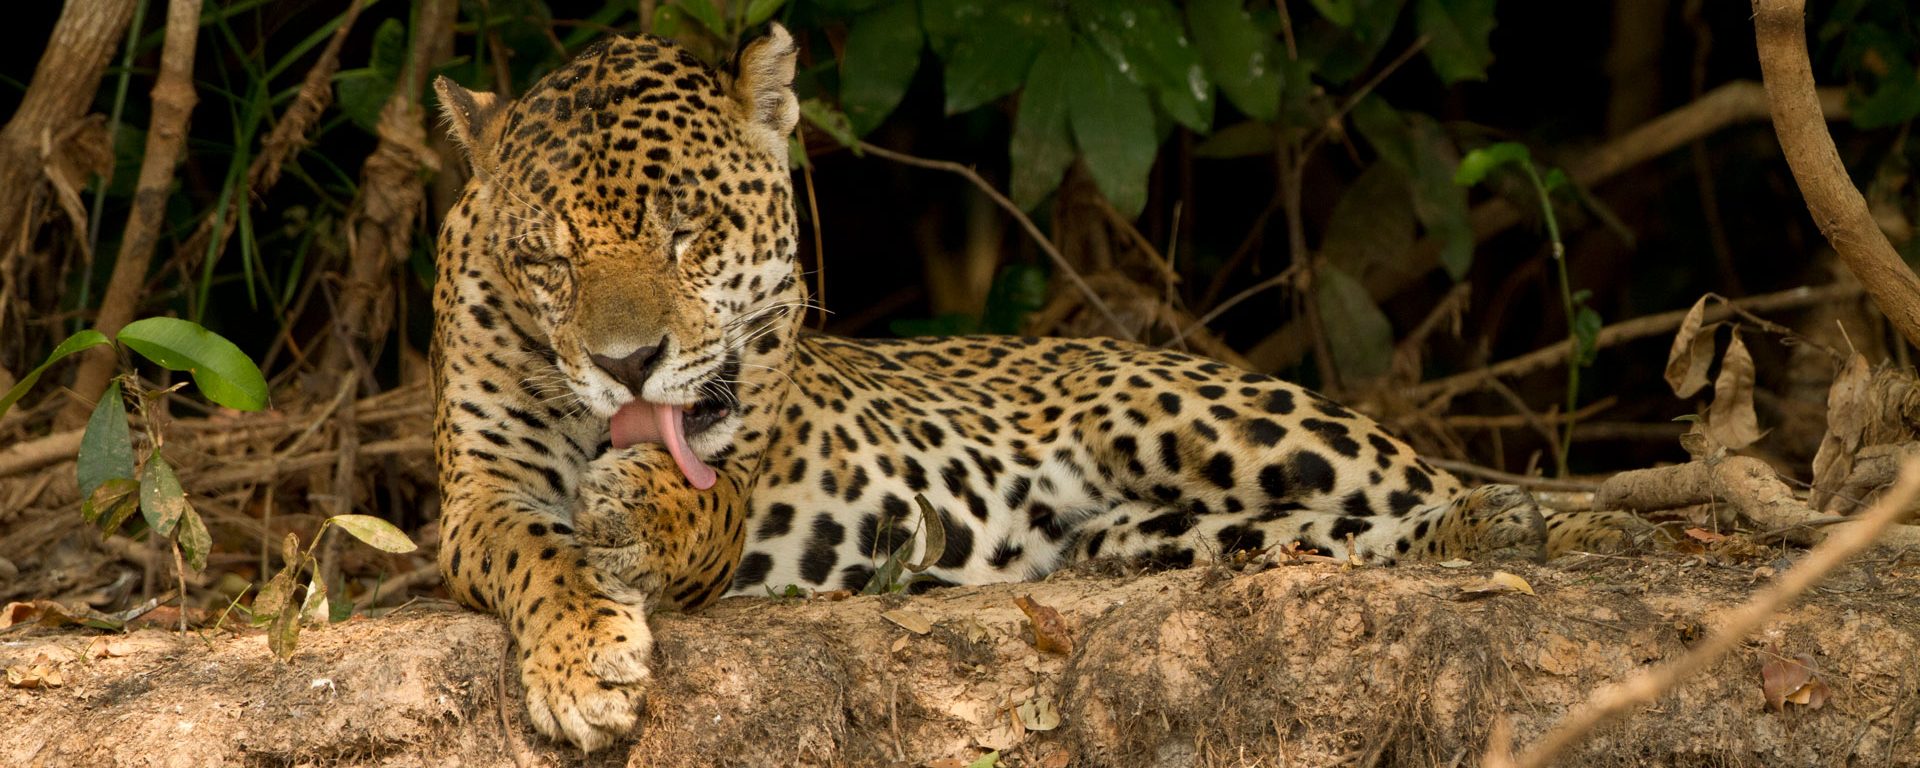 Jaguar grooming itself in the Pantanal, Brazil